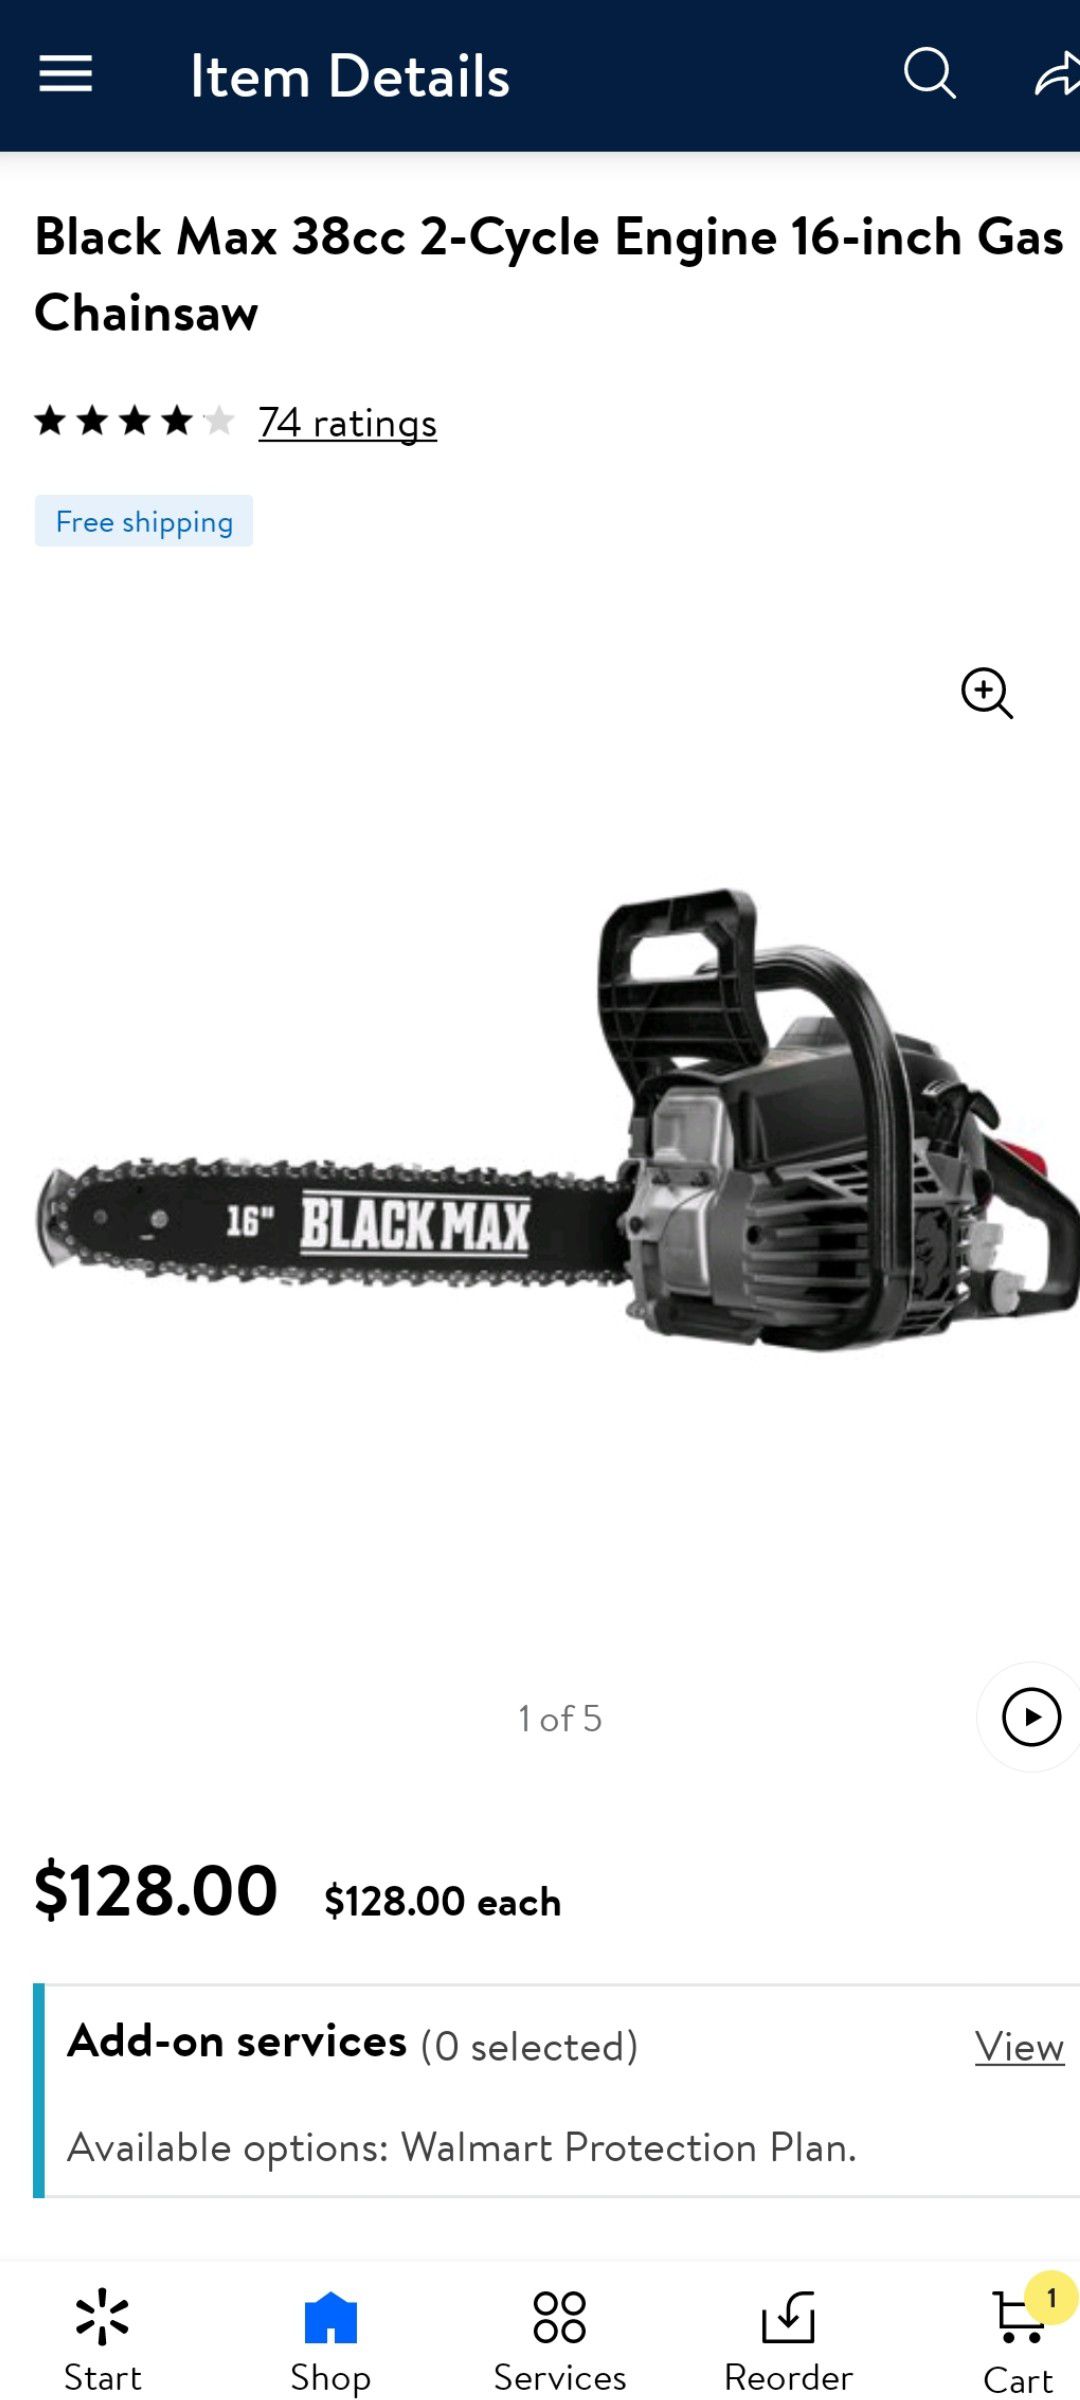 16" blackmax chainsaw